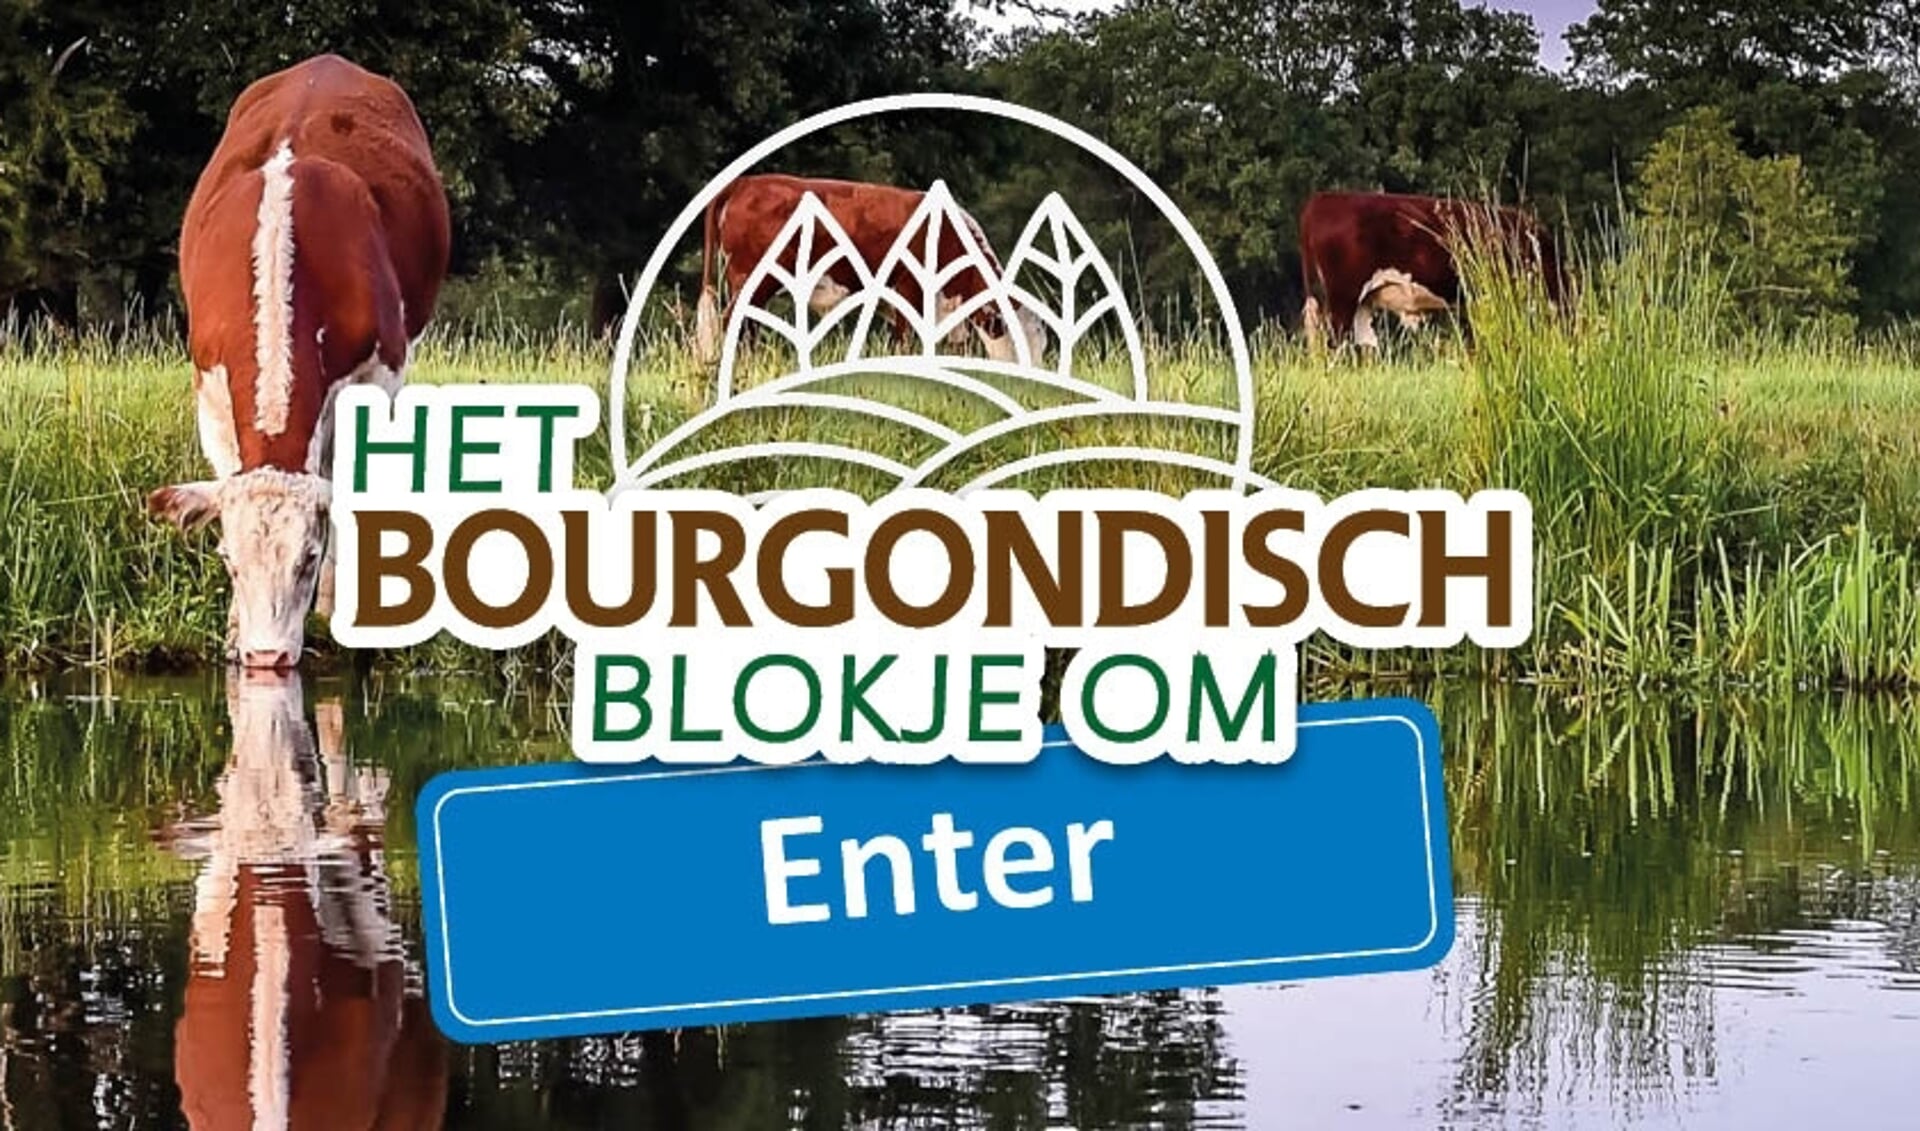 Het Bourgondisch Blokje om Enter brengt u nog dichter bij de natuur door het eten 'bij de boer'.